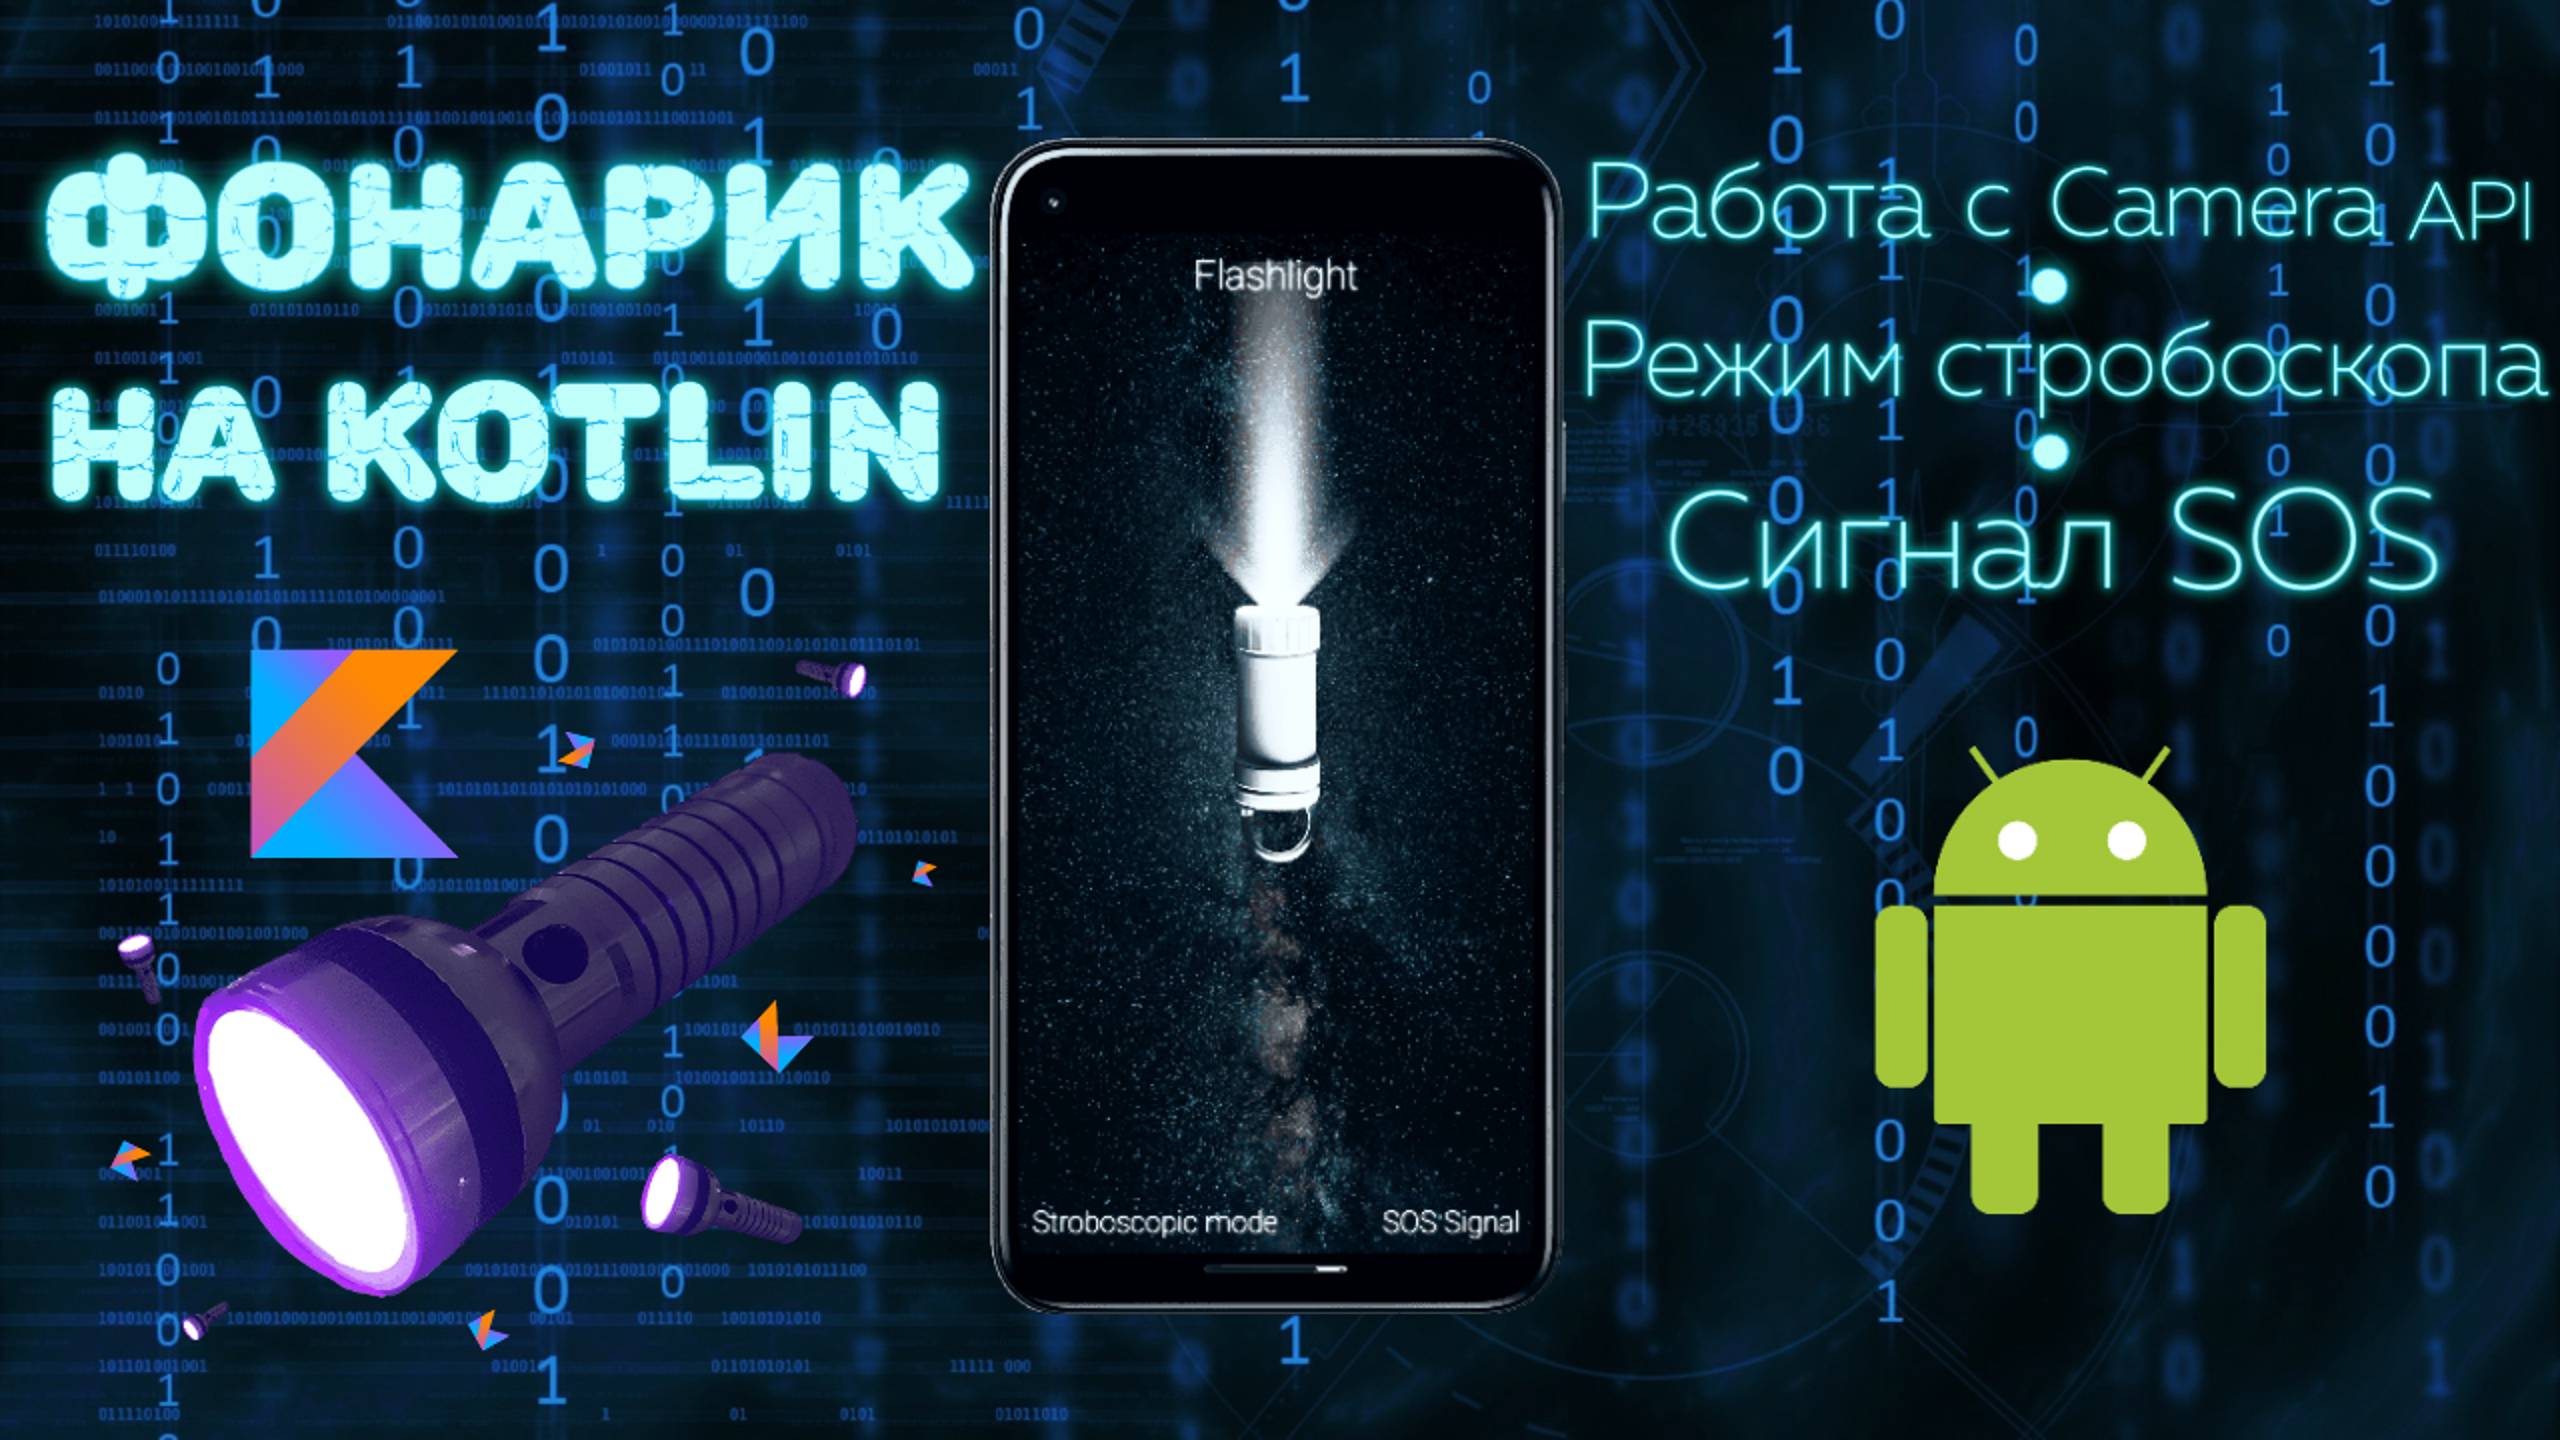 Создаю Приложение ФОНАРИК на Kotlin за 17 минут! | Android Программирование